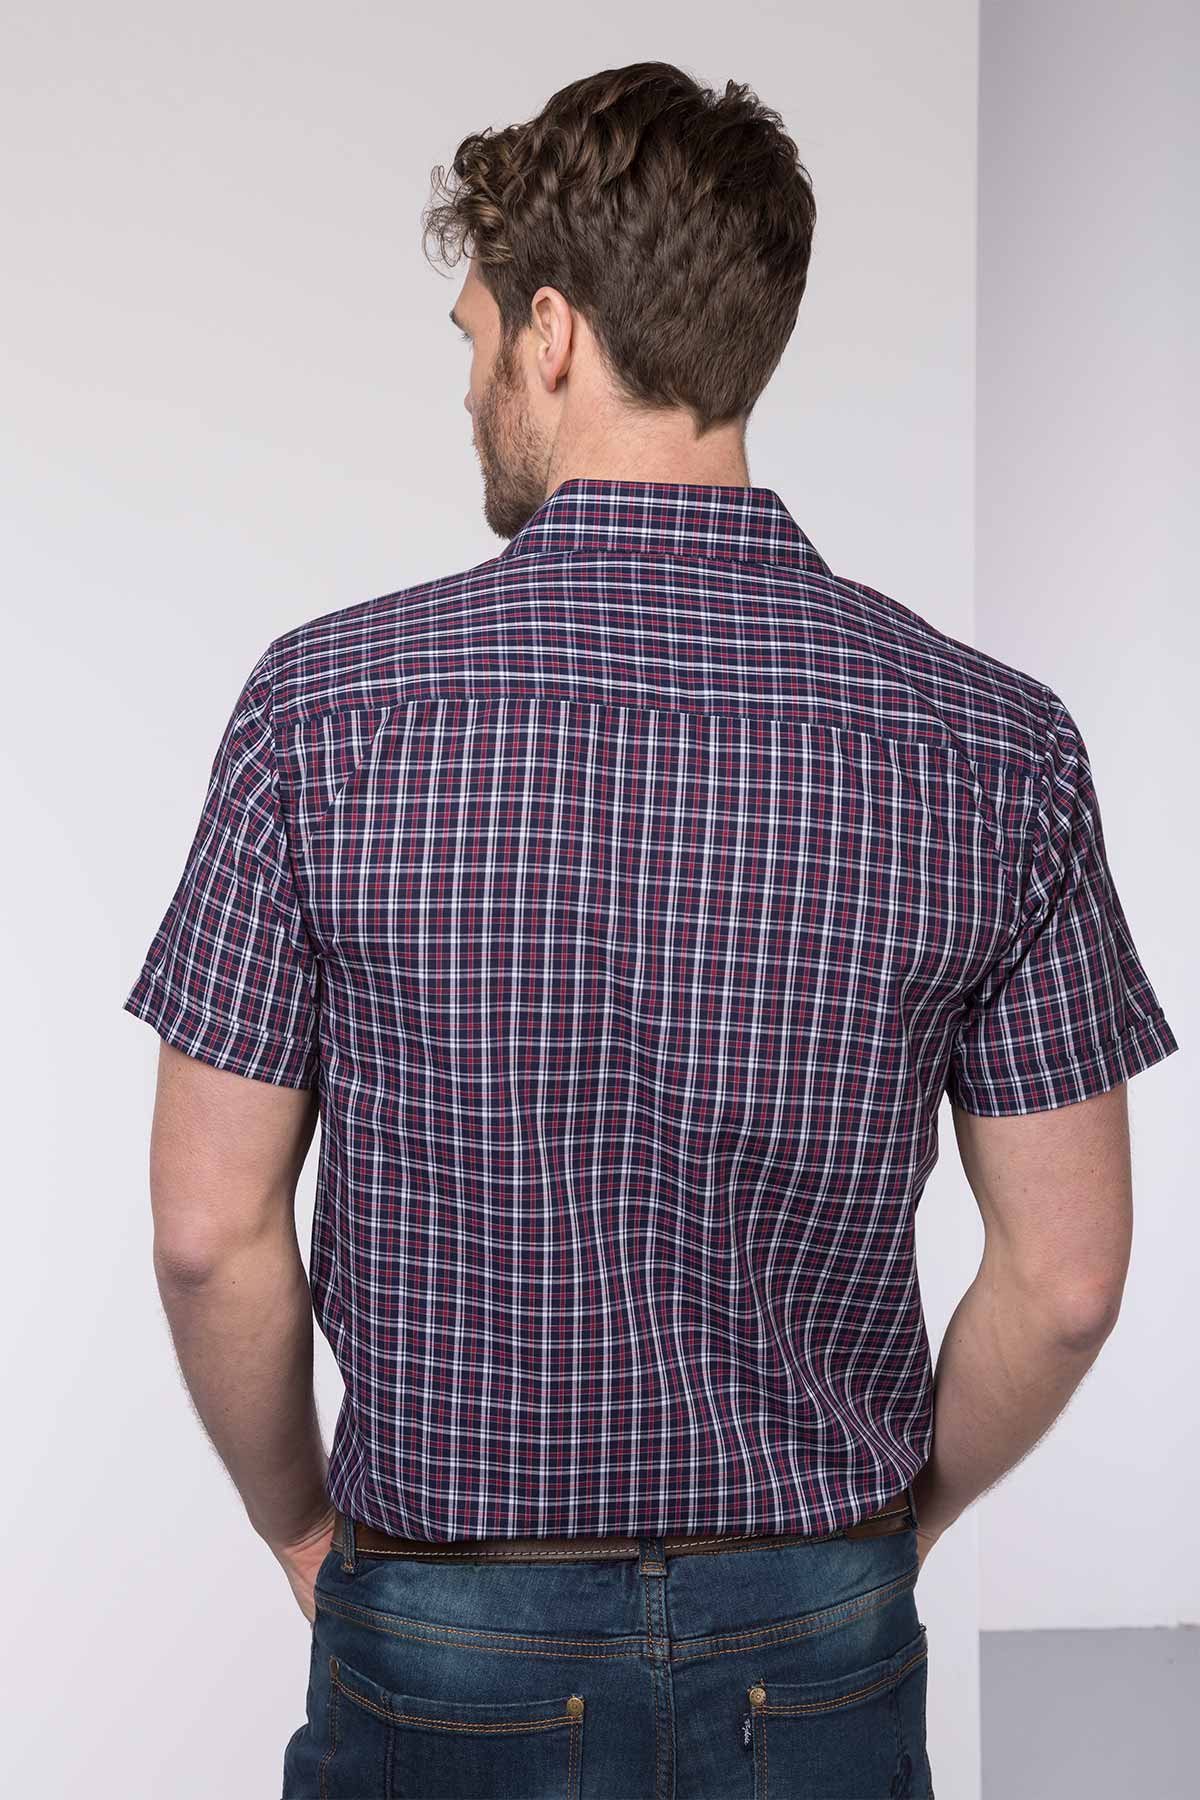 Mens Short Sleeved Shirts UK | Mens Check Shirts | Rydale